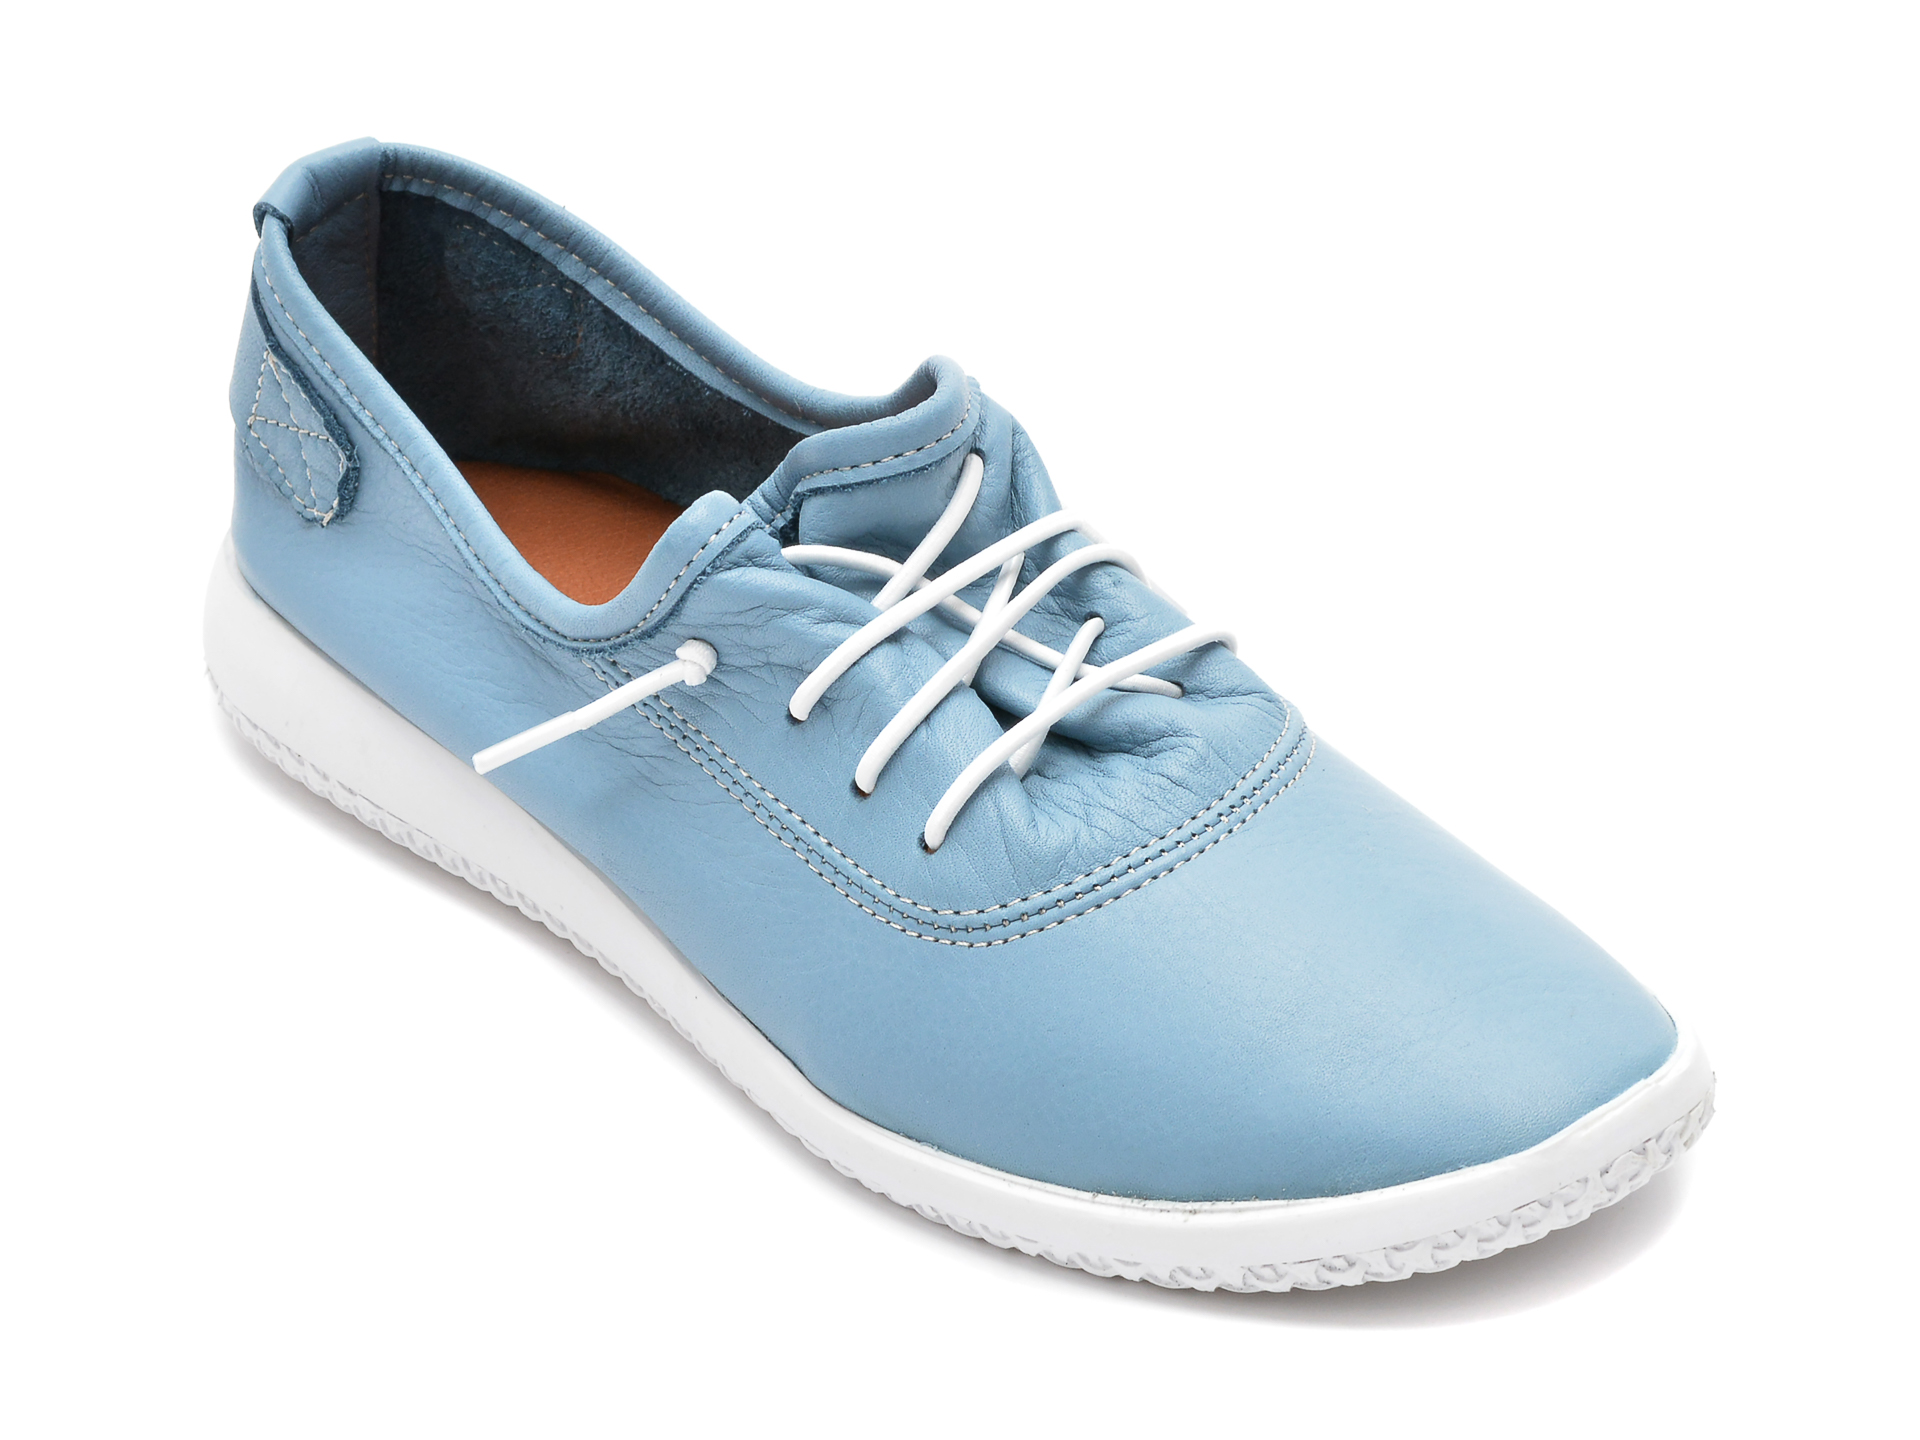 Pantofi FLAVIA PASSINI albastri, 85620209, din piele naturala 2022 ❤️ Pret Super Black Friday otter.ro imagine noua 2022